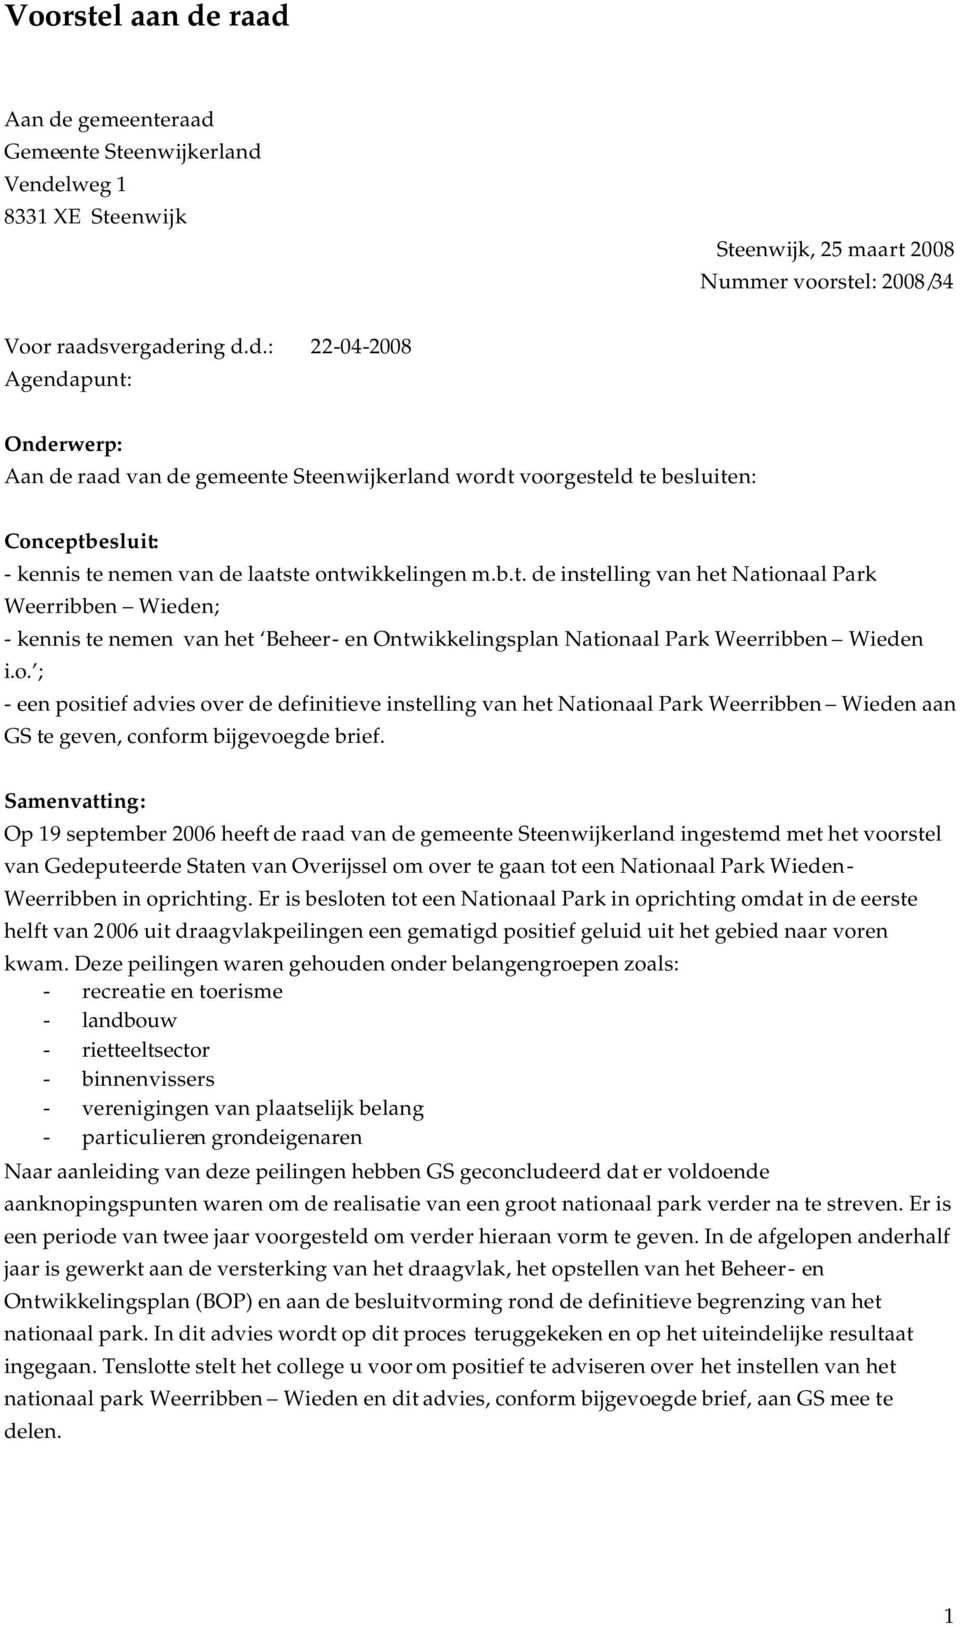 Samenvatting: Op 19 september 2006 heeft de raad van de gemeente Steenwijkerland ingestemd met het voorstel van Gedeputeerde Staten van Overijssel om over te gaan tot een Nationaal Park Wieden-